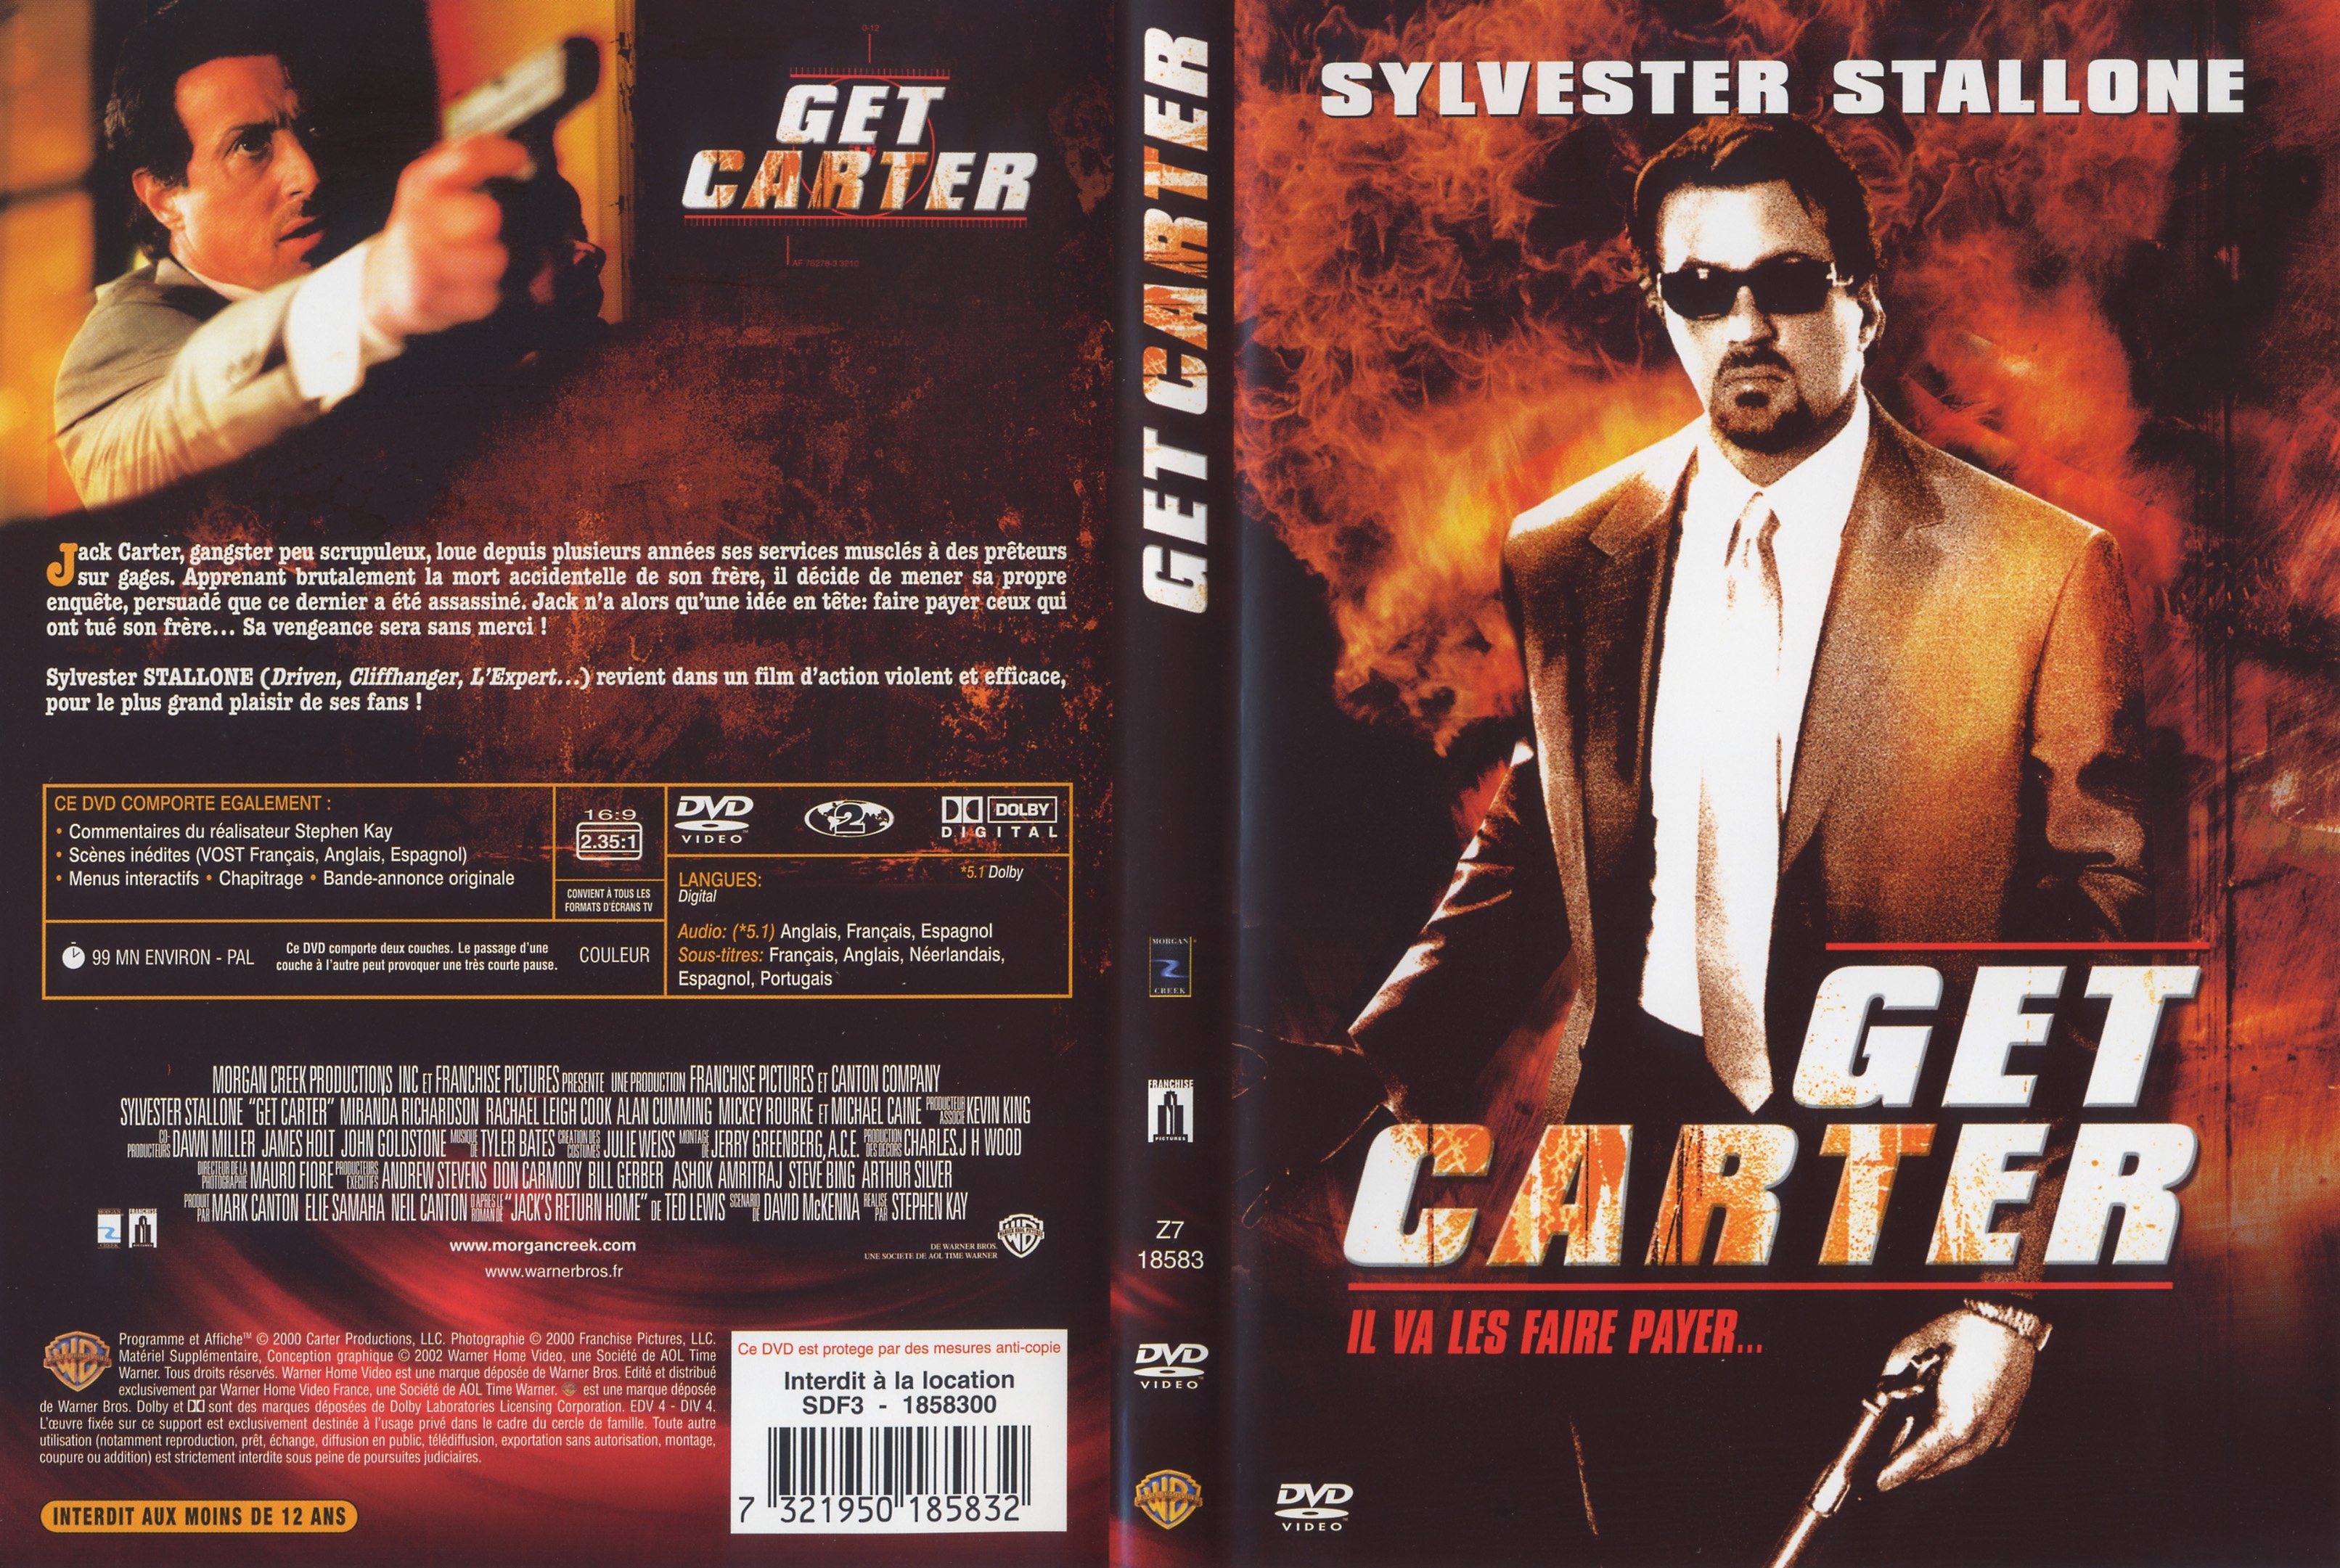 Jaquette DVD Get Carter v3